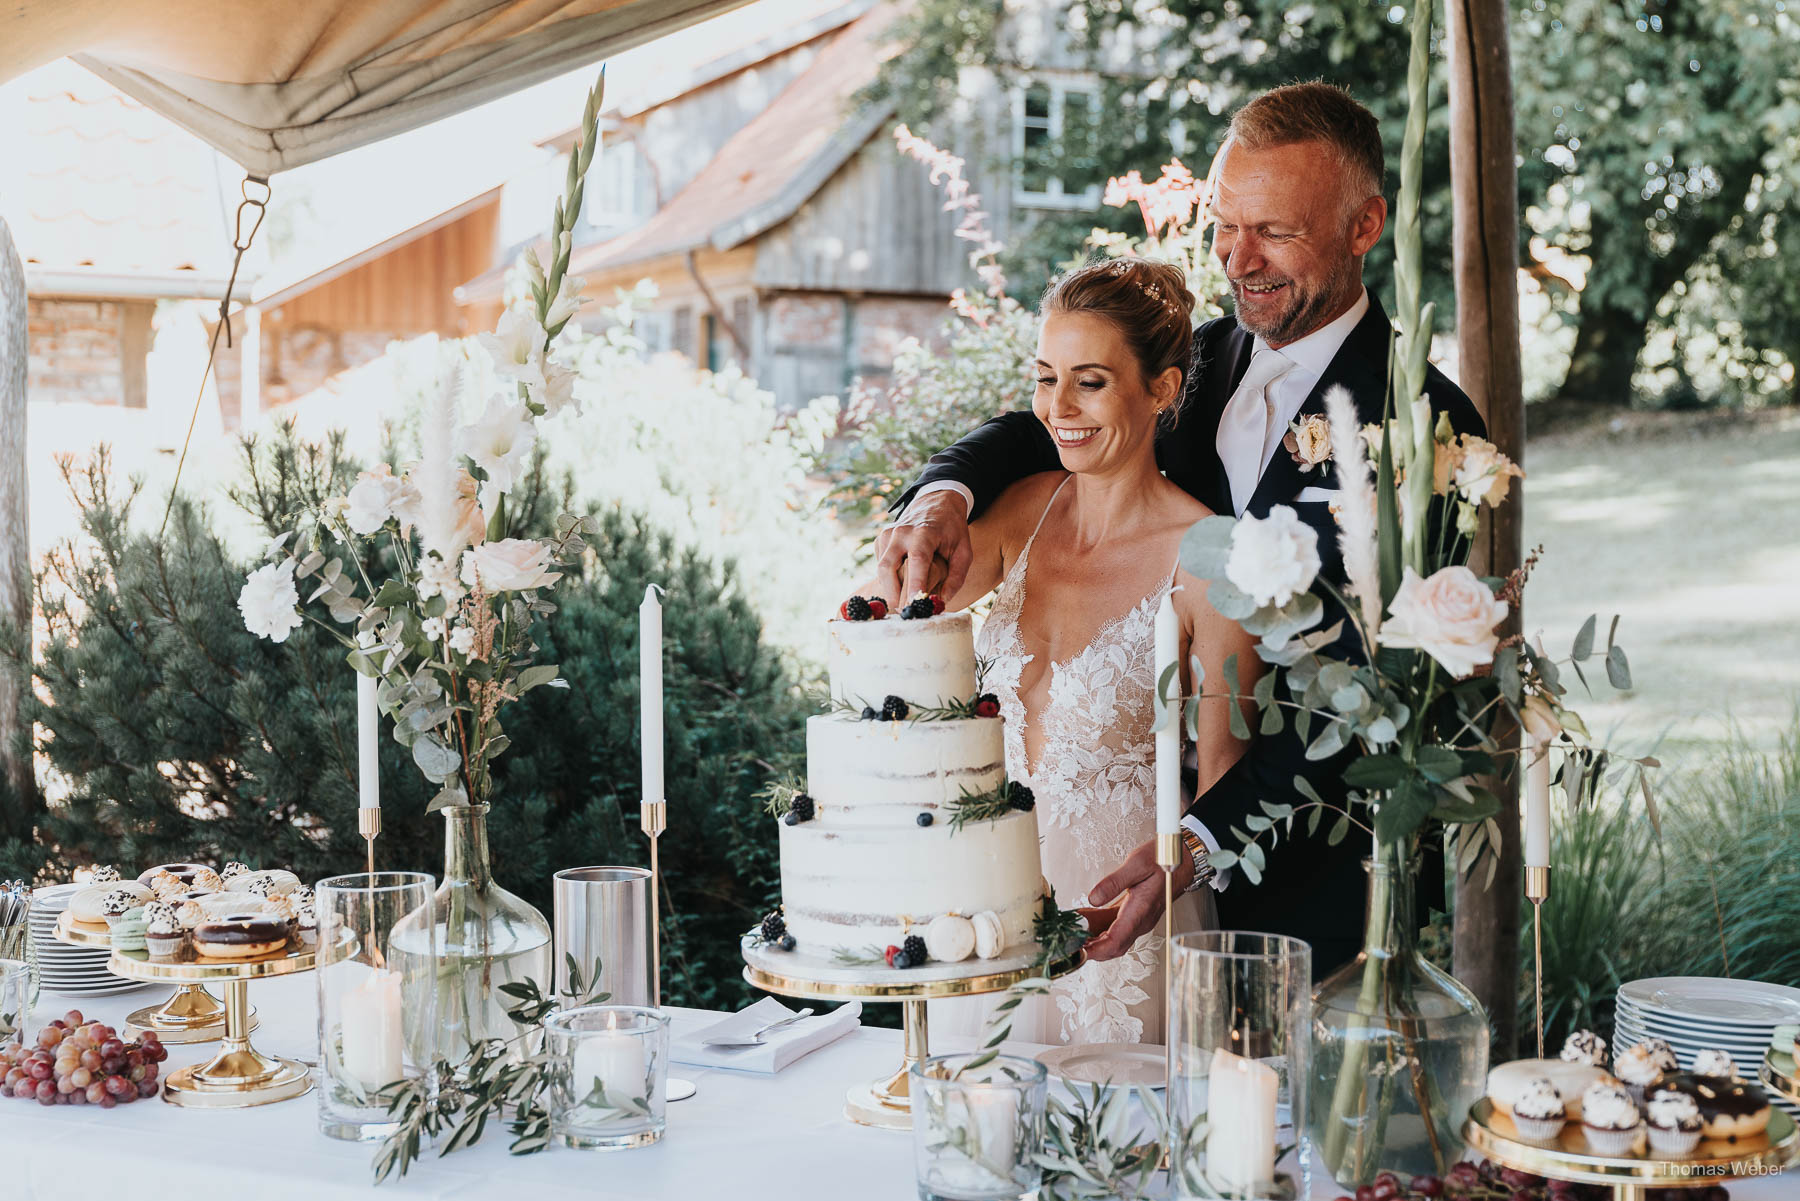 Empfang der Hochzeitsgäste und Hochzeitstorte am Nordenholzer Hof, Hochzeitsfotograf Thomas Weber